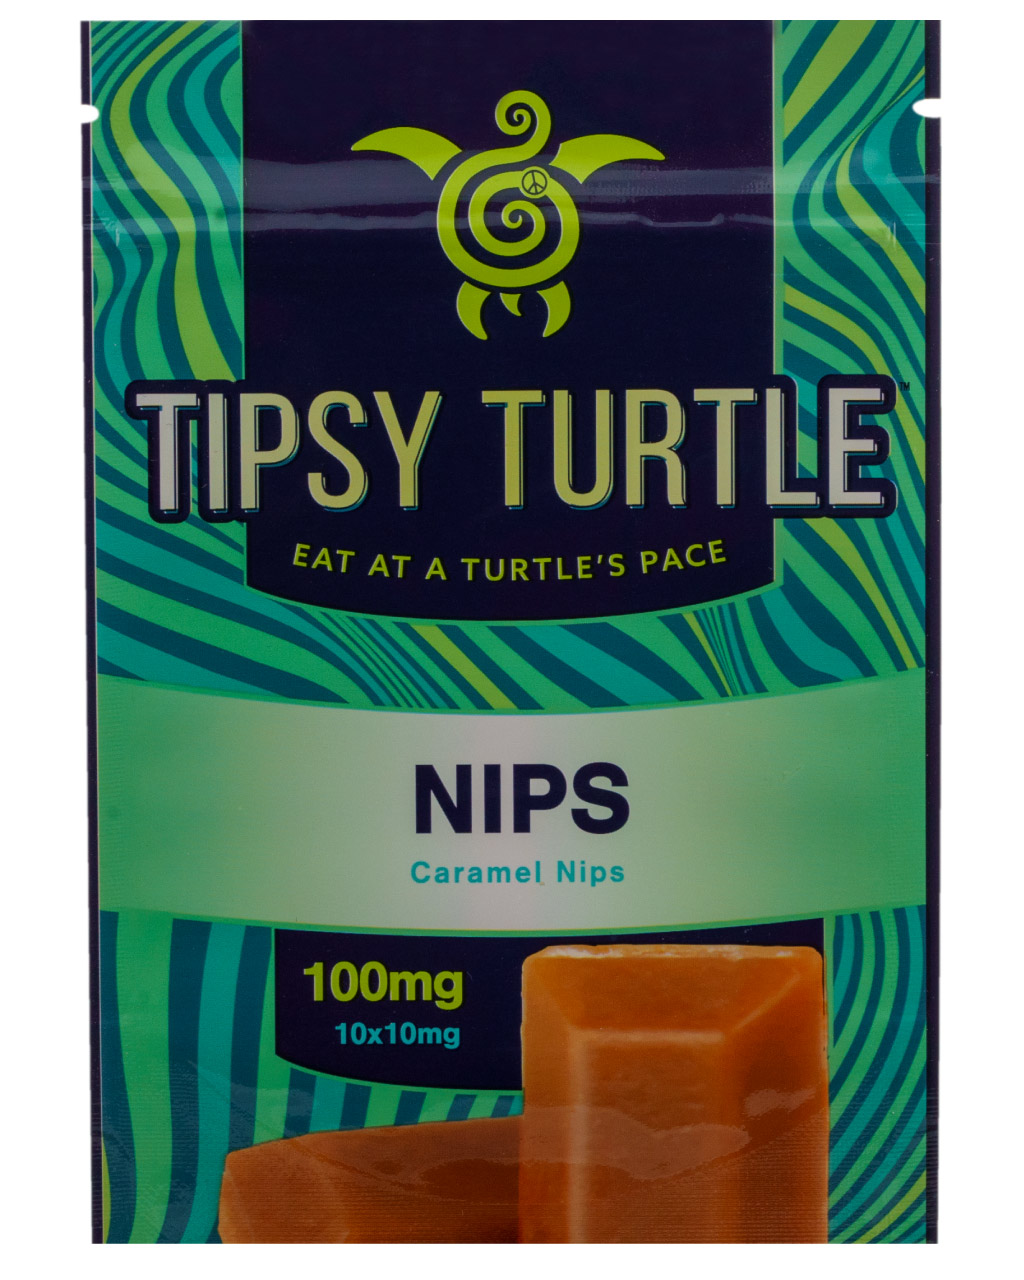 Tipsy Turtle Nips Packaging